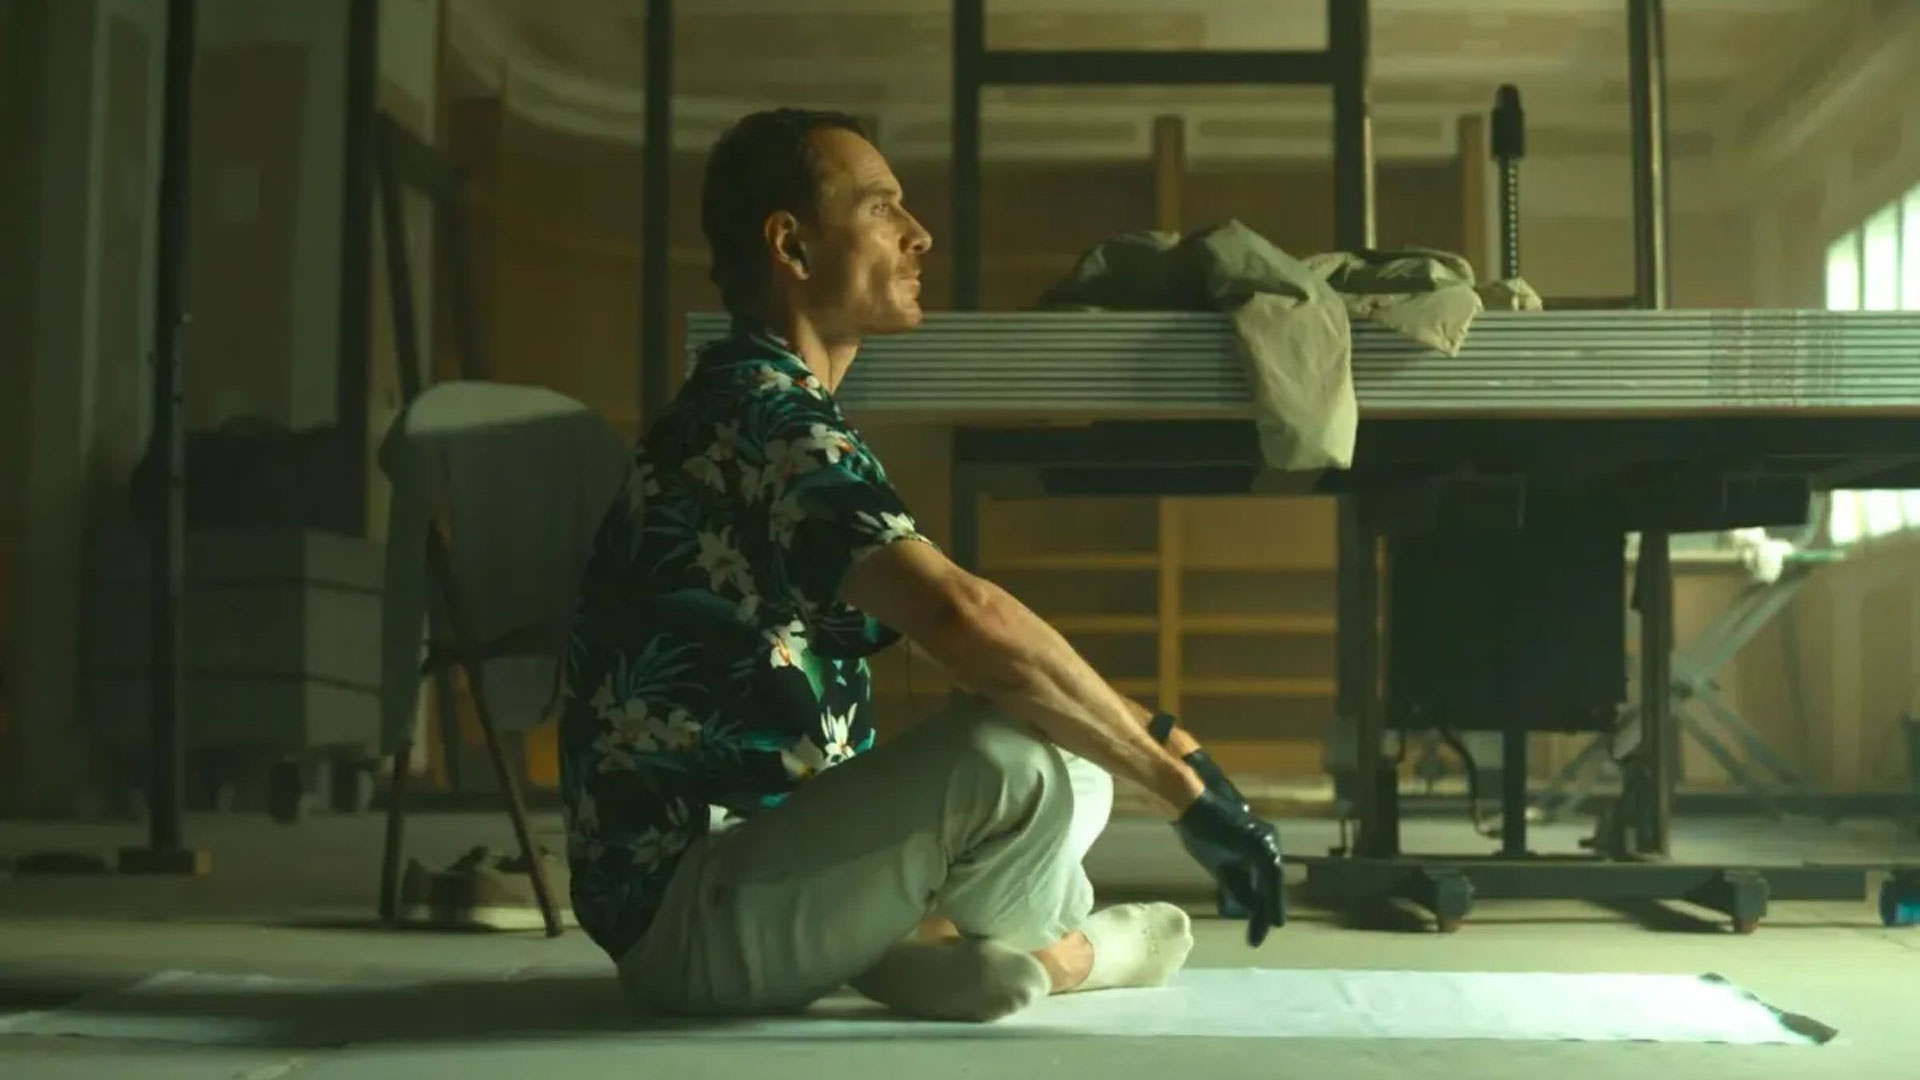 مایکل فاسبندر با پیراهنی طرحدار نشسته وسط یک اتاق نیمه خالی در حالی یوگا کردن در نمایی از فیلم قاتل به کارگردانی دیوید فینچر